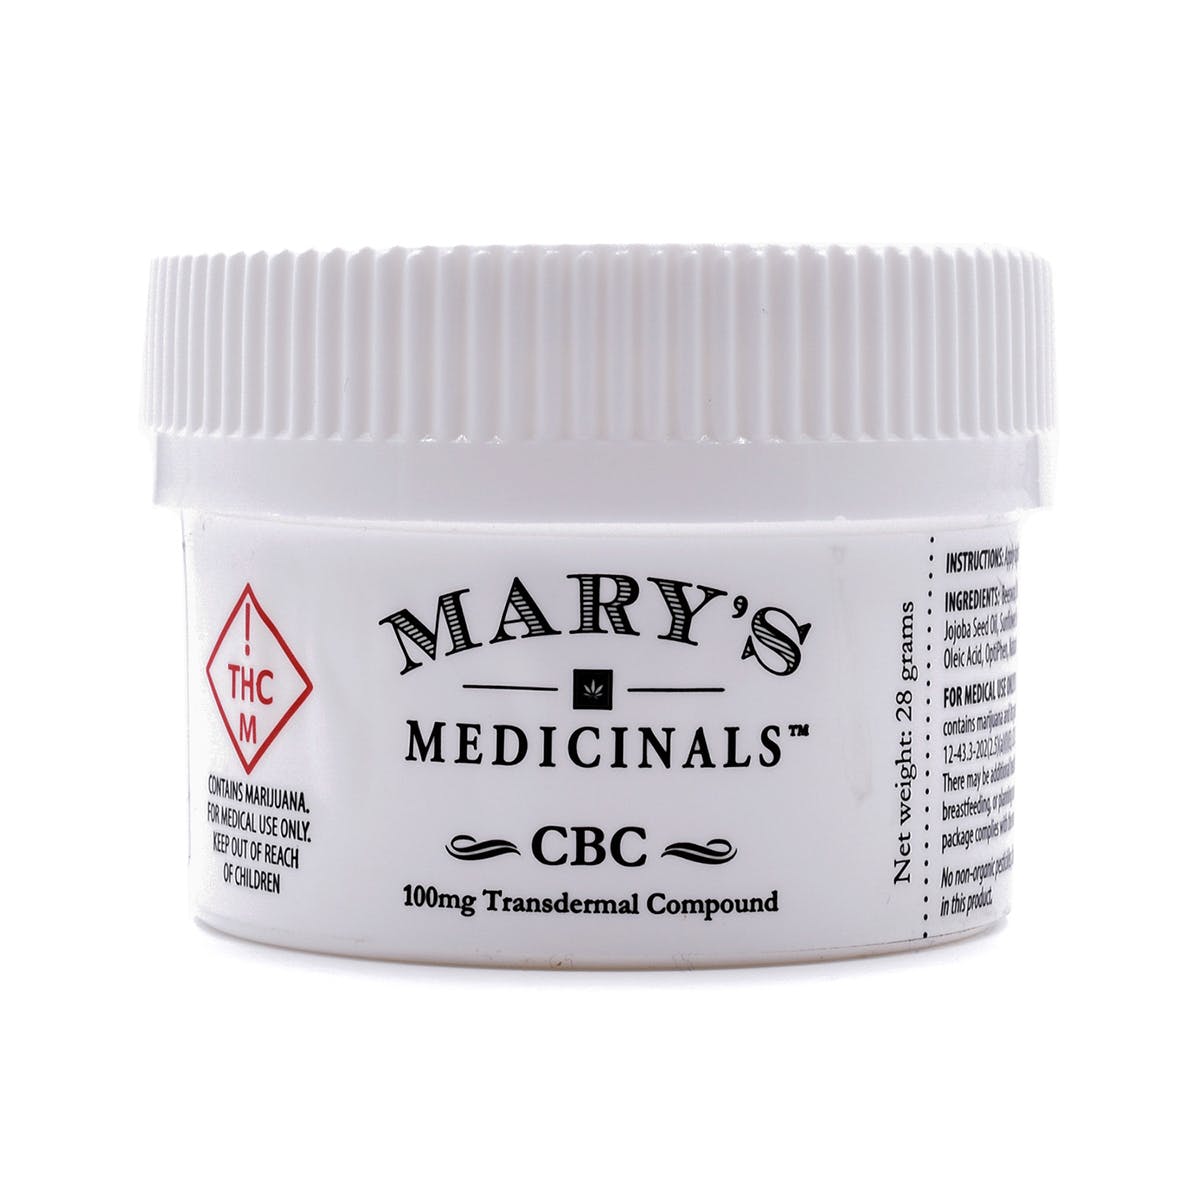 marijuana-dispensaries-kaya-cannabis-colfax-med-in-denver-cbc-transdermal-compound-2c-100mg-med